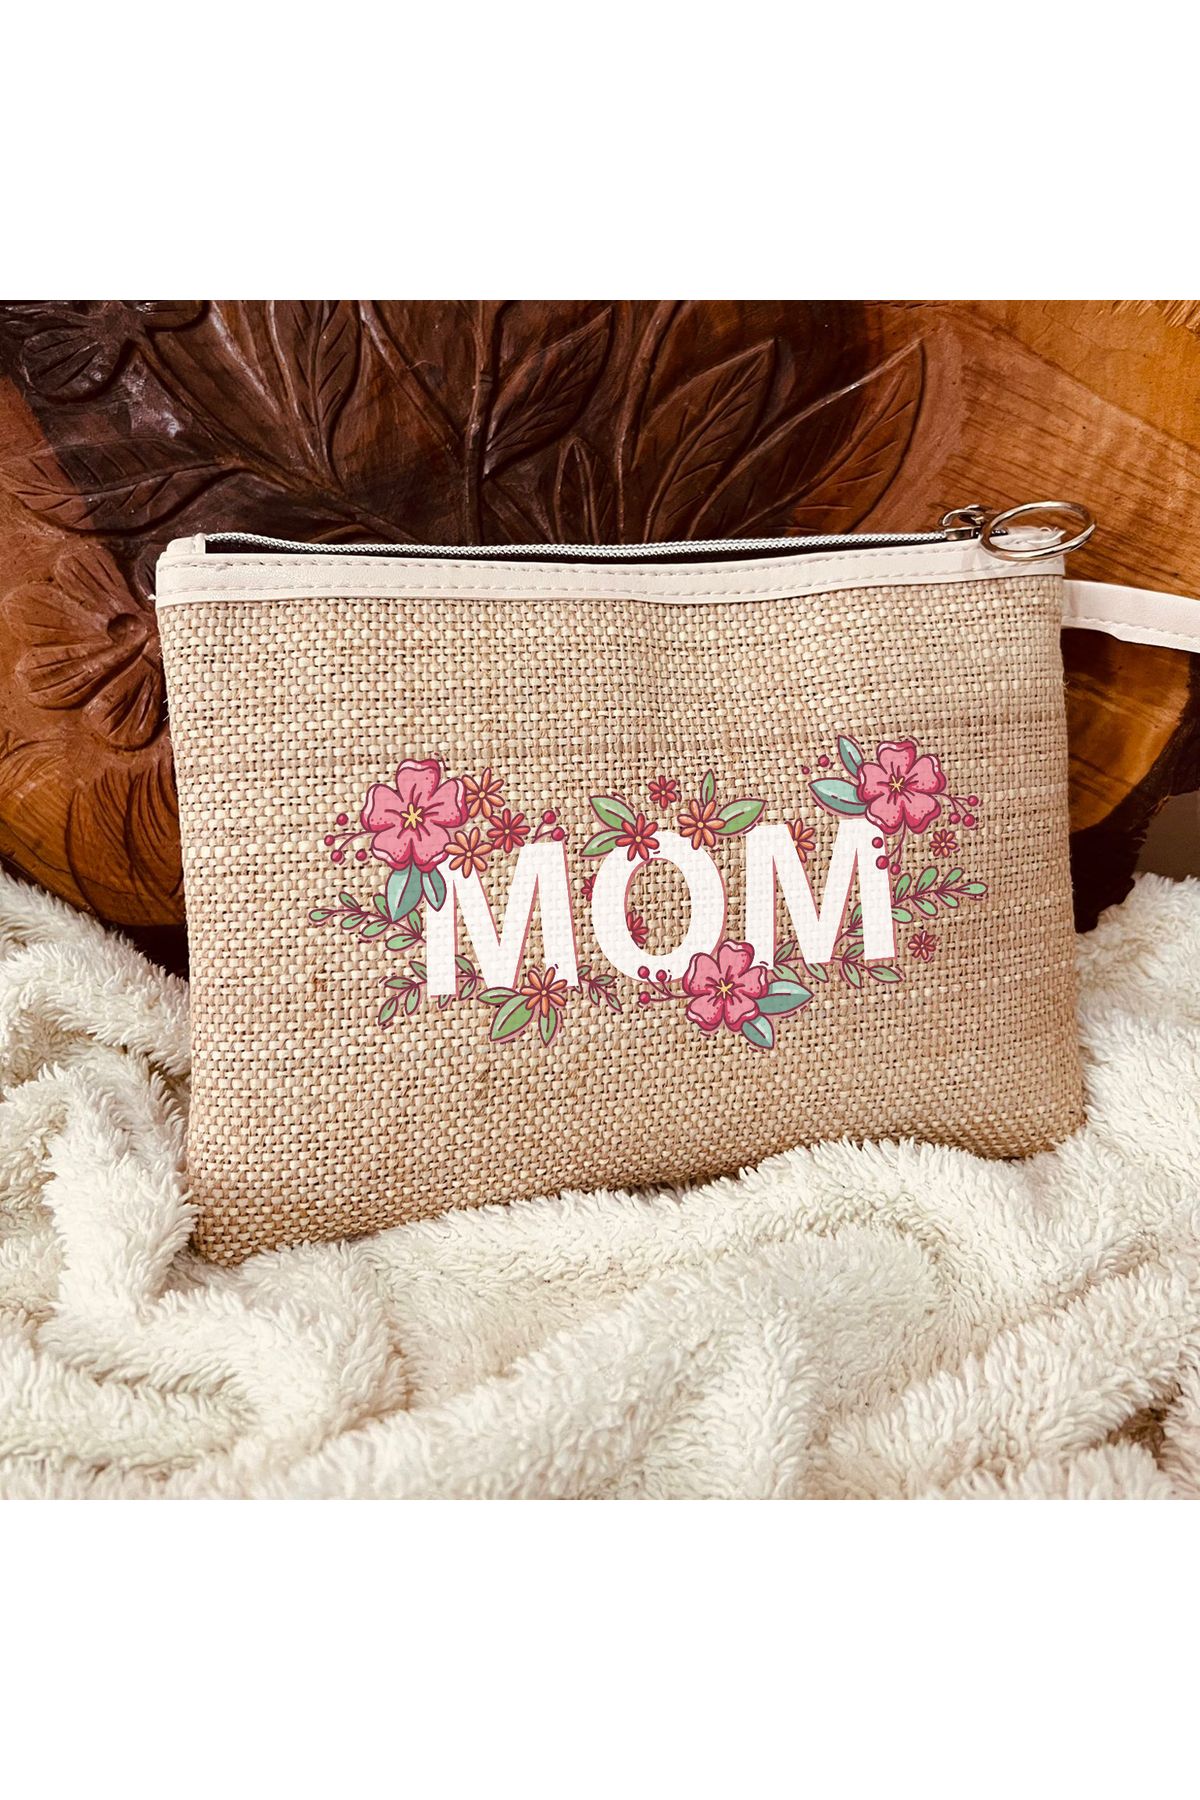 TexKid Anne/Mom Çiçek Tasarımlı 3'lü Matruşka Hediye Clutch/Makyaj/El Çantası